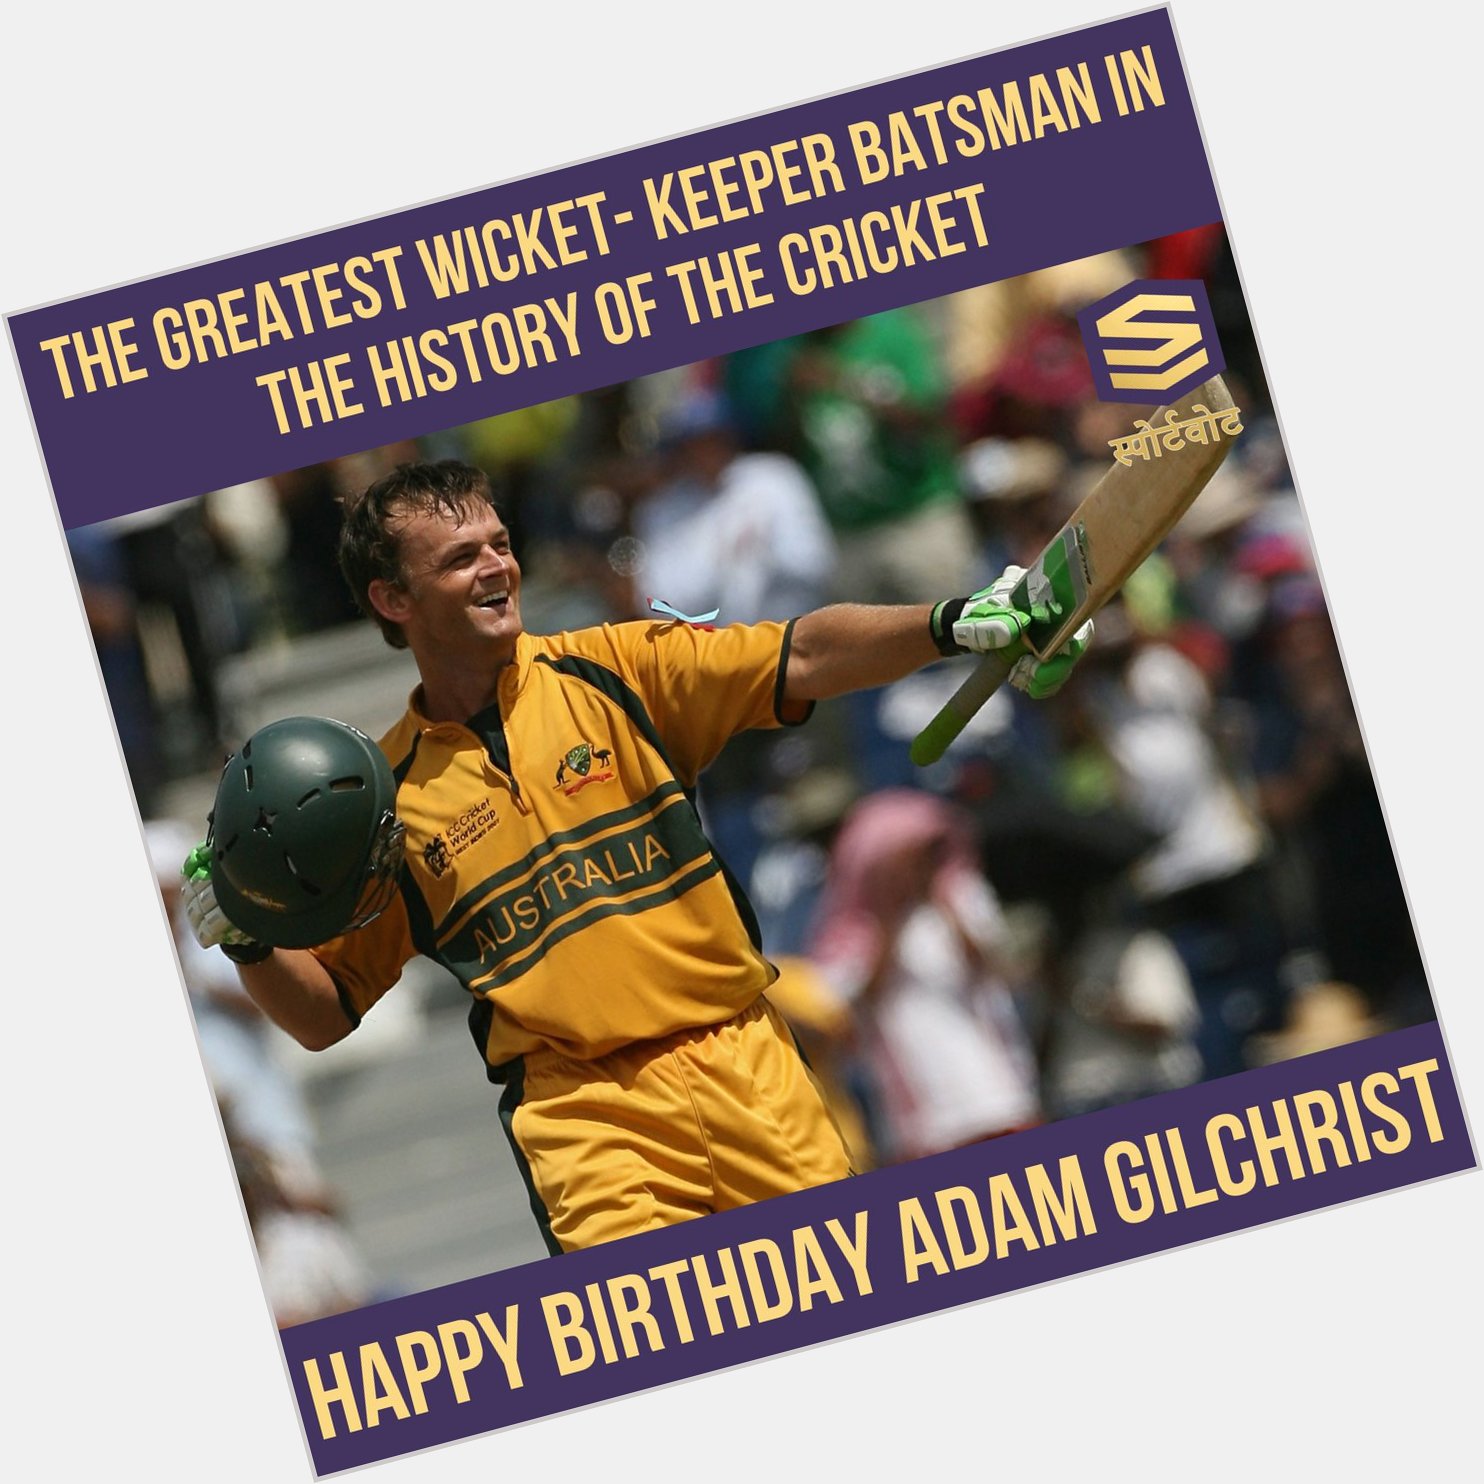 Happy Birthday Adam Gilchrist        